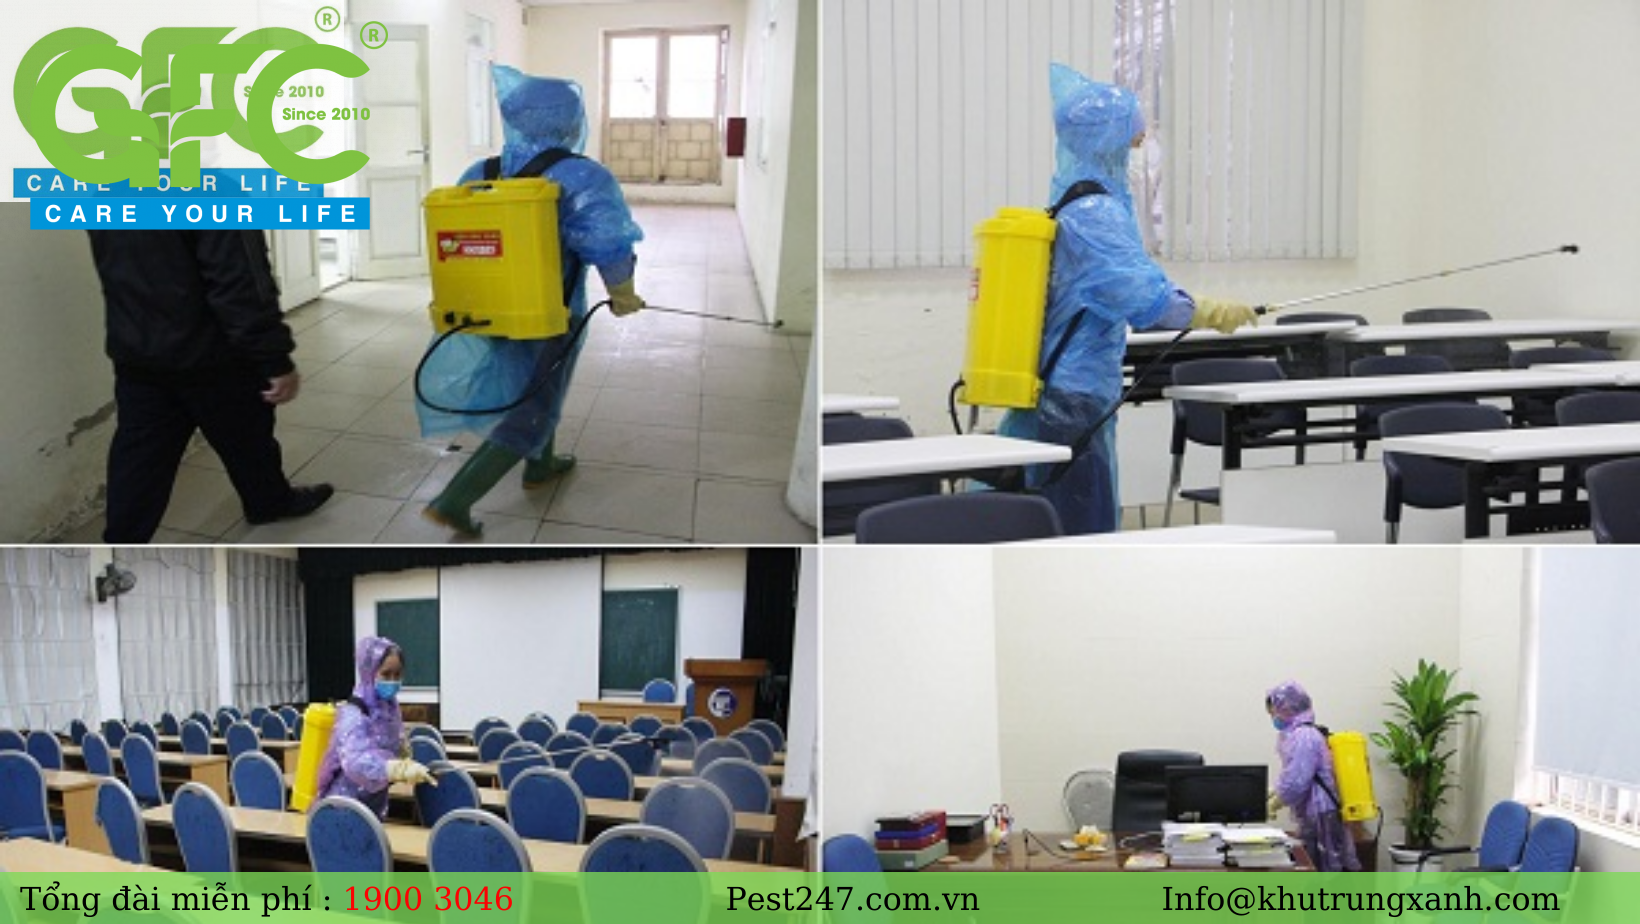 REVIEW 20 công ty Dịch vụ diệt côn trùng uy tín nhất tại TP.HCM